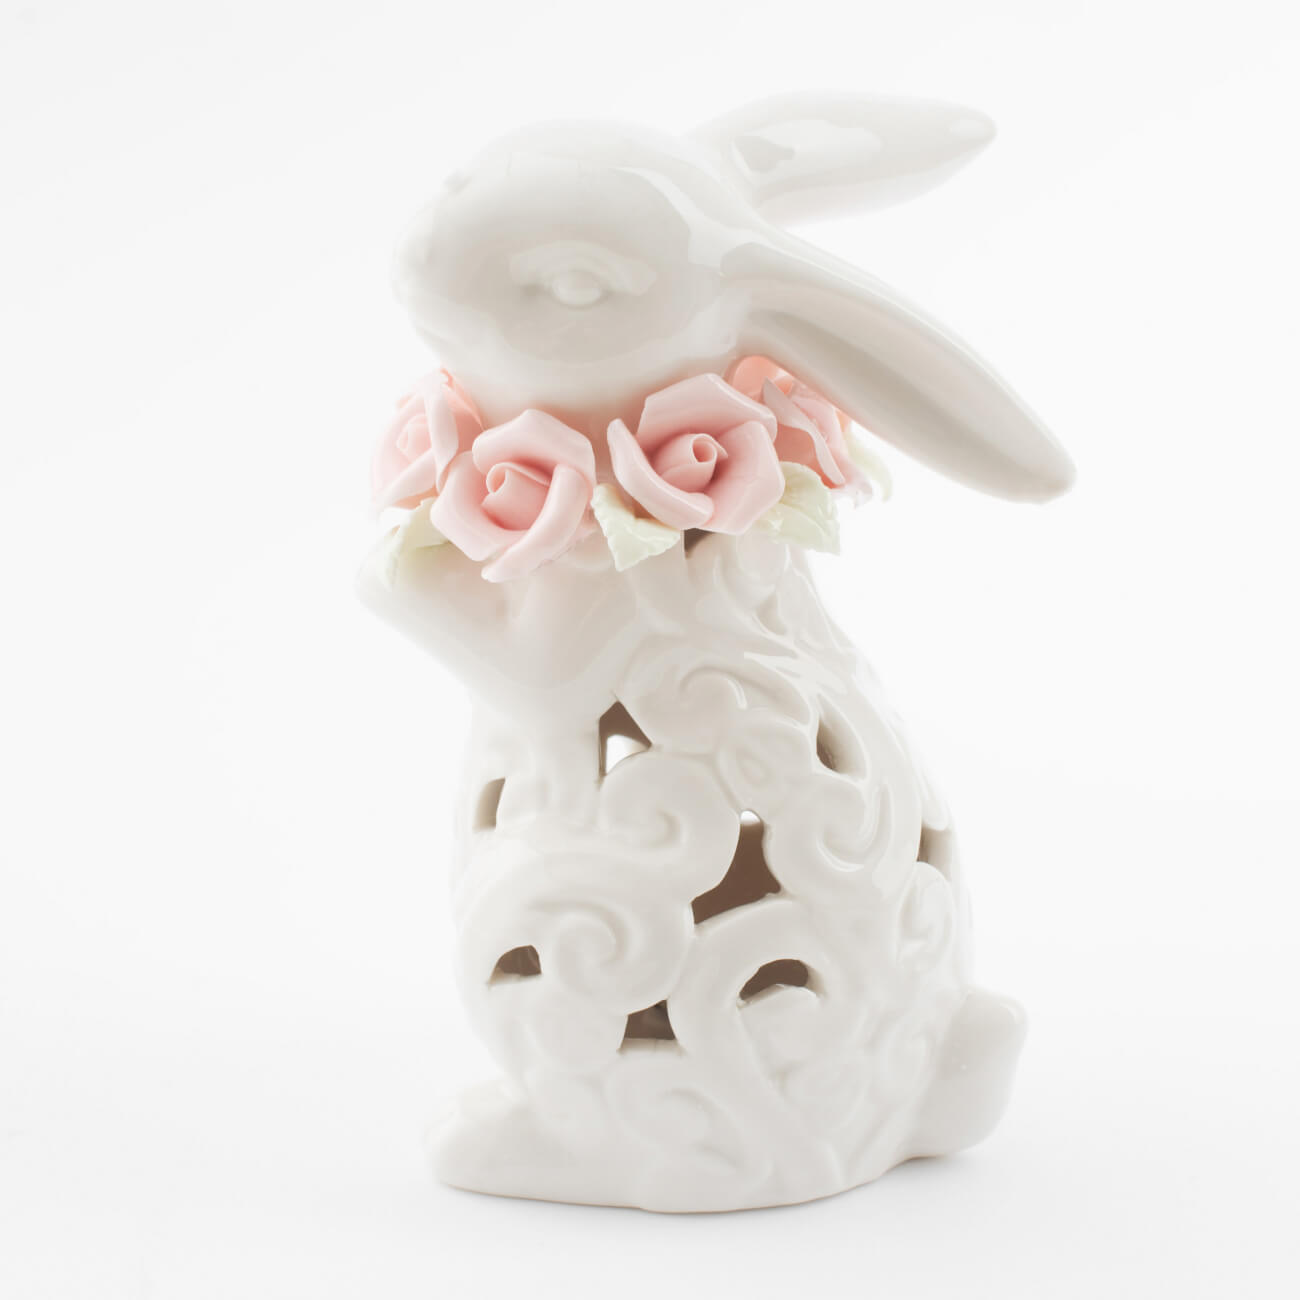 статуэтка 17 см фарфор p белая кролик с корзиной ов pure easter Статуэтка с подсветкой, 13 см, фарфор P, белая, Кролик с цветами, Easter